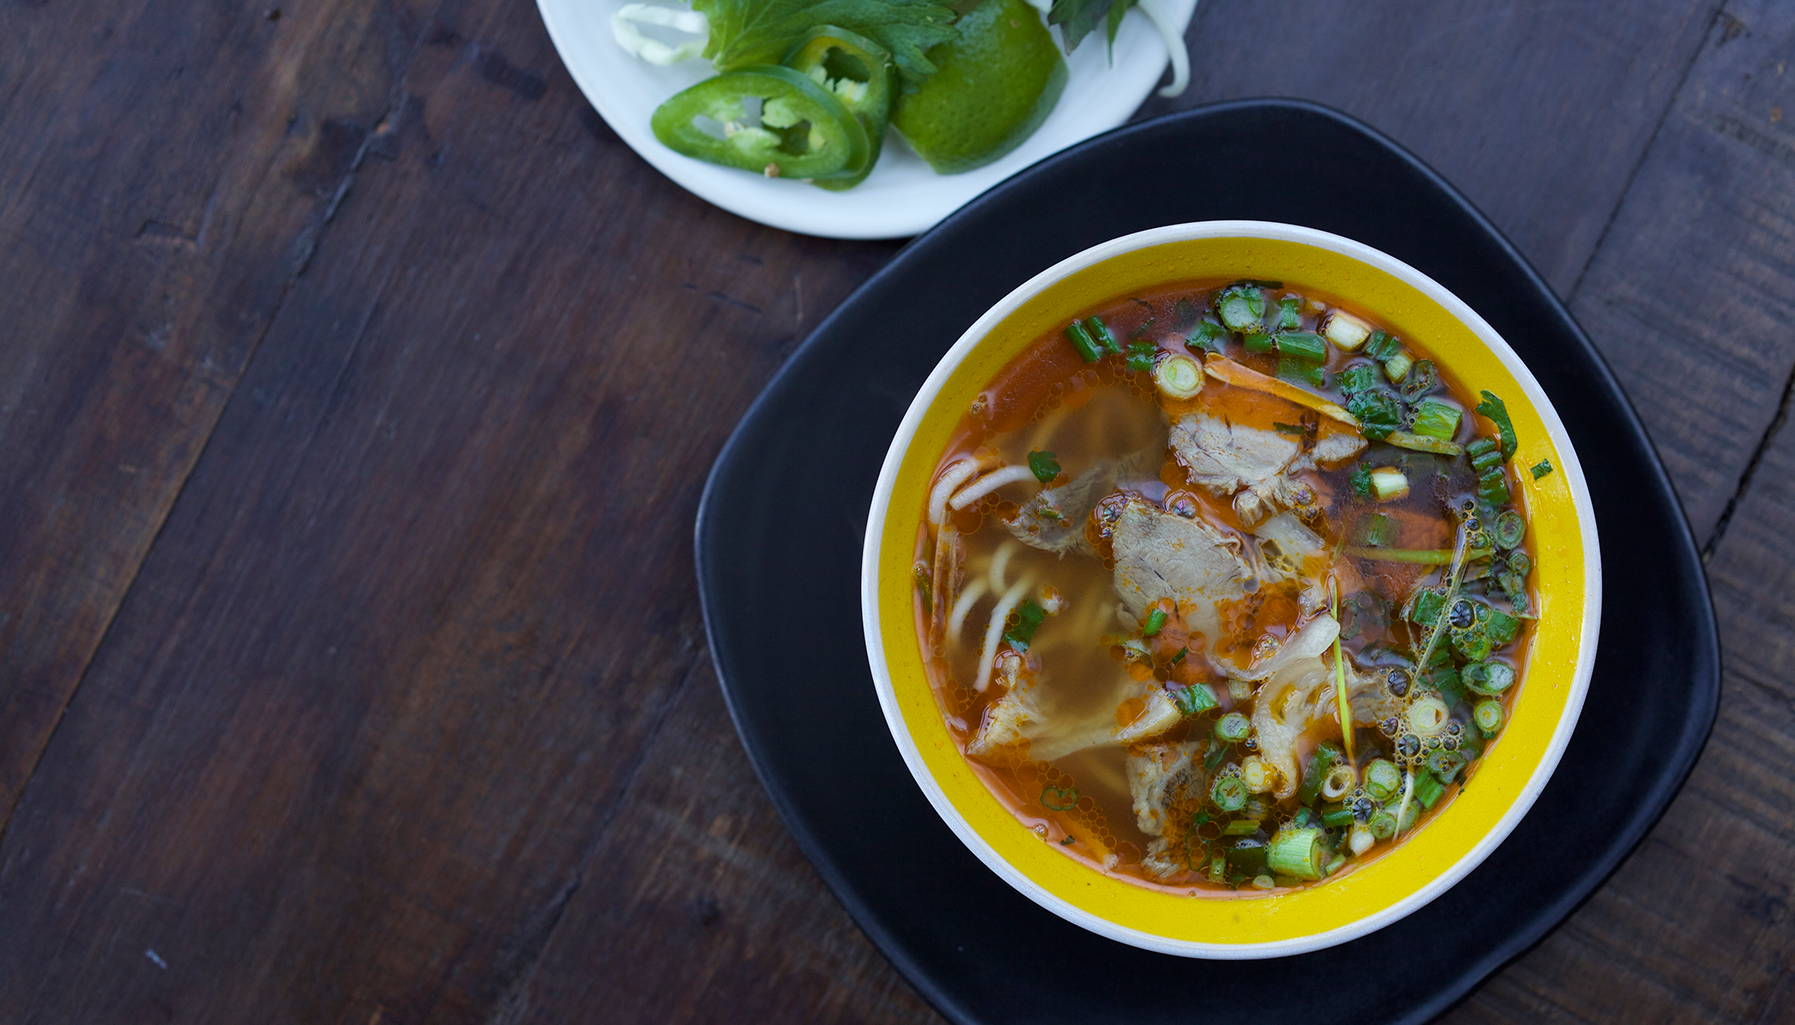 Charles Phan – Vinh danh ẩm thực Việt